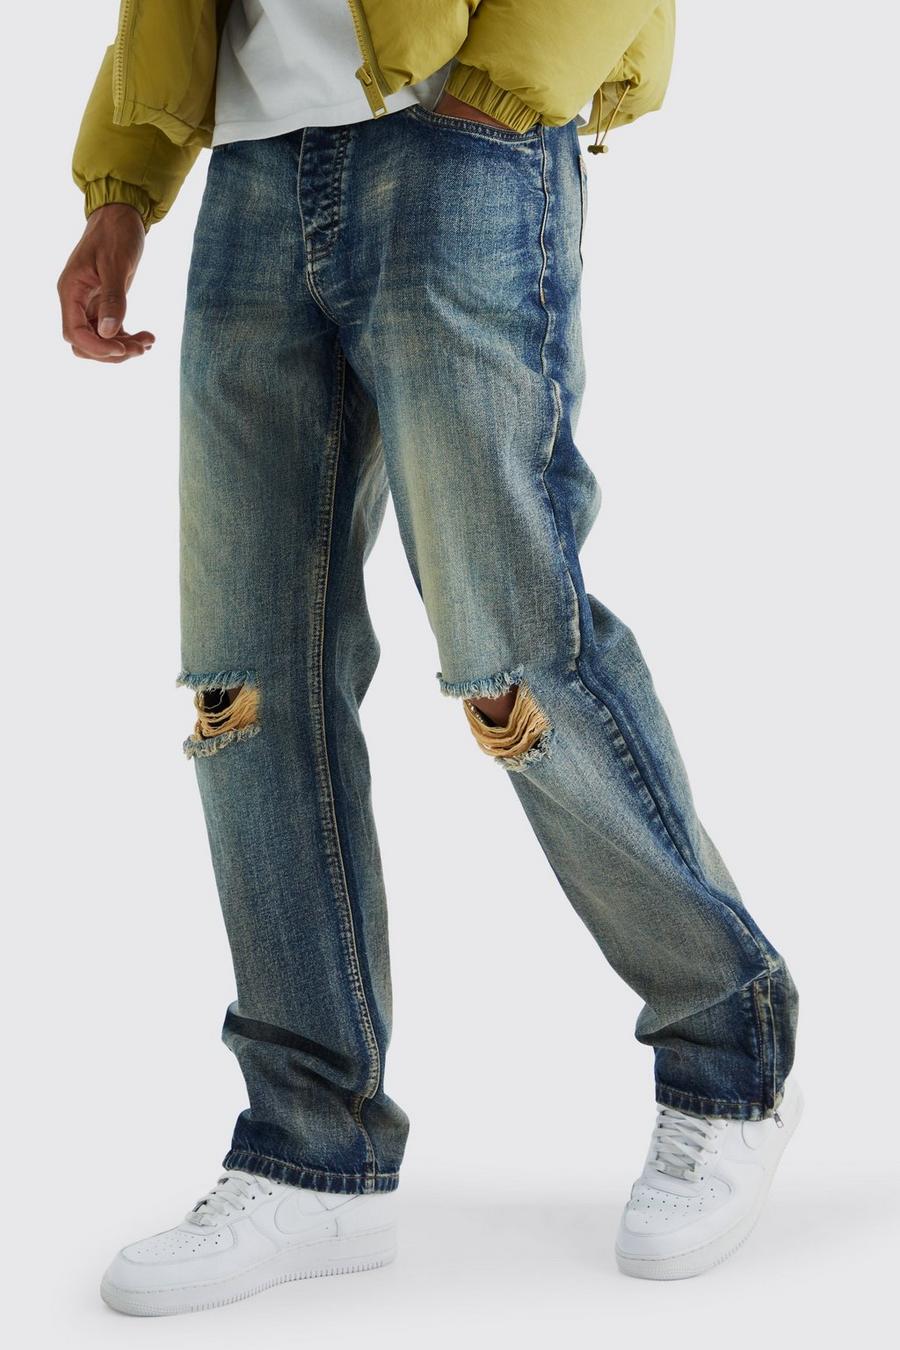 Jeans Tall rilassati in denim rigido con zip sul fondo, Antique wash